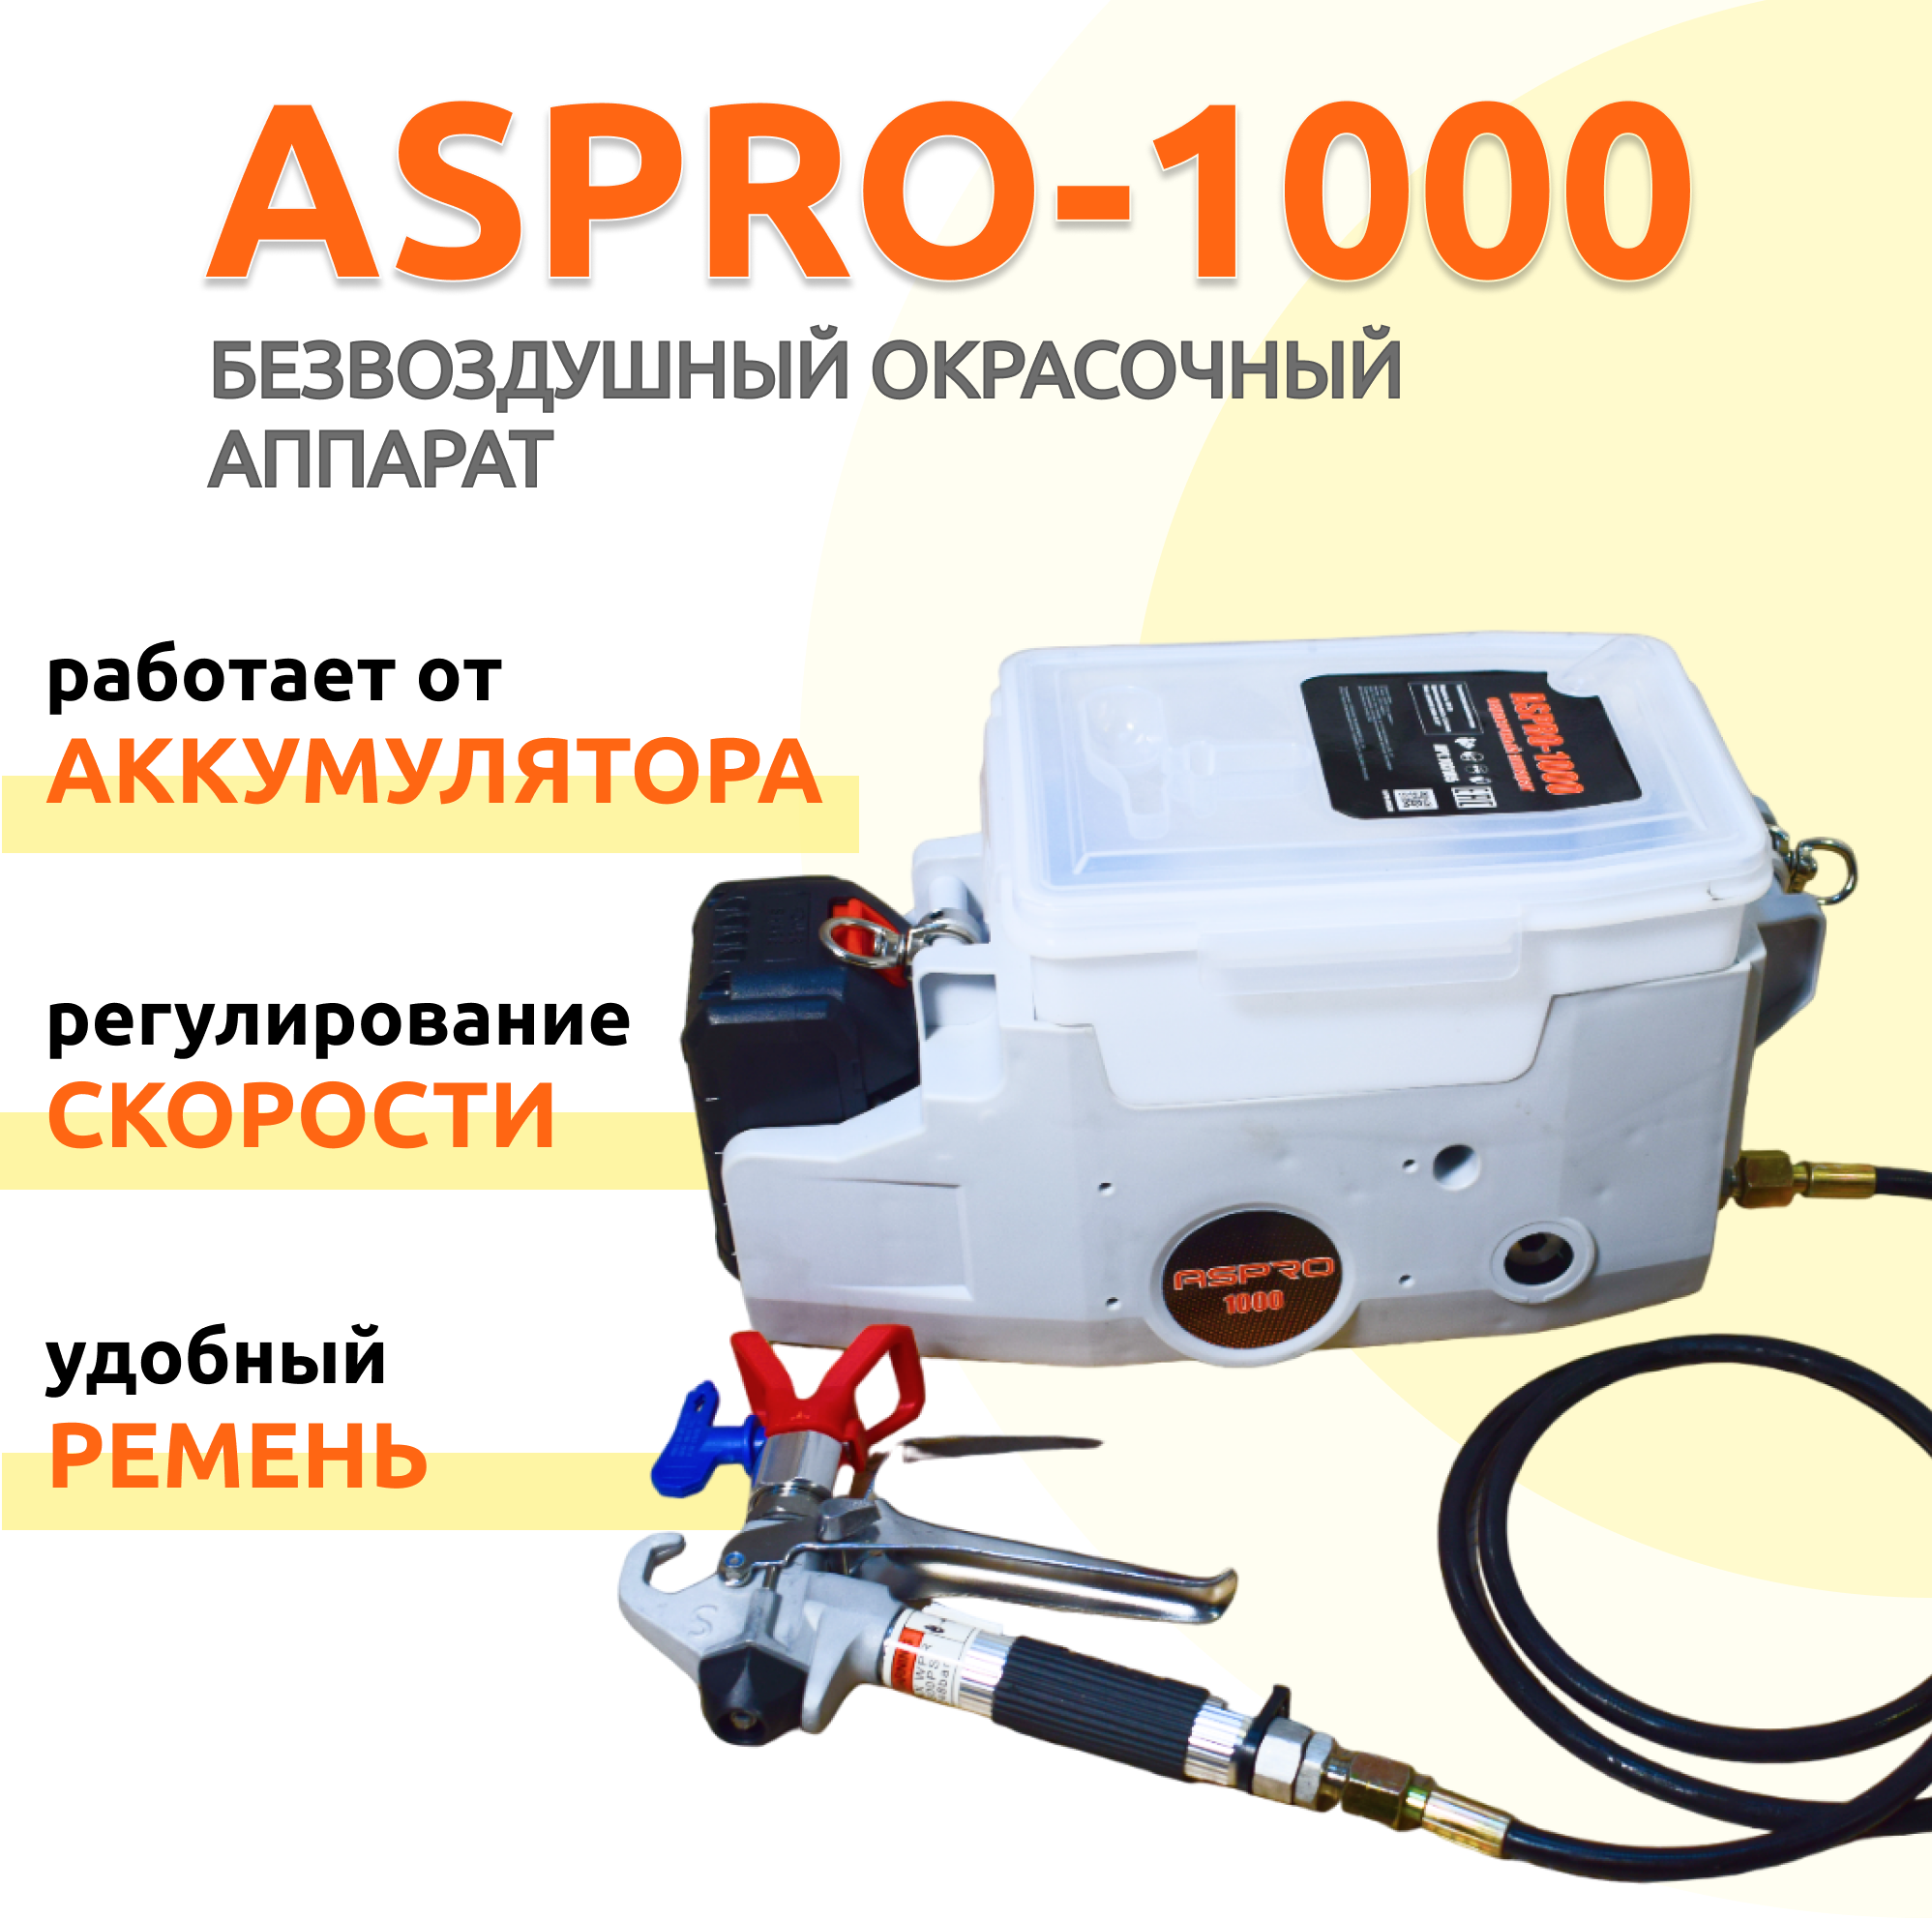 Безвоздушный окрасочный аппарат ASPRO-1000